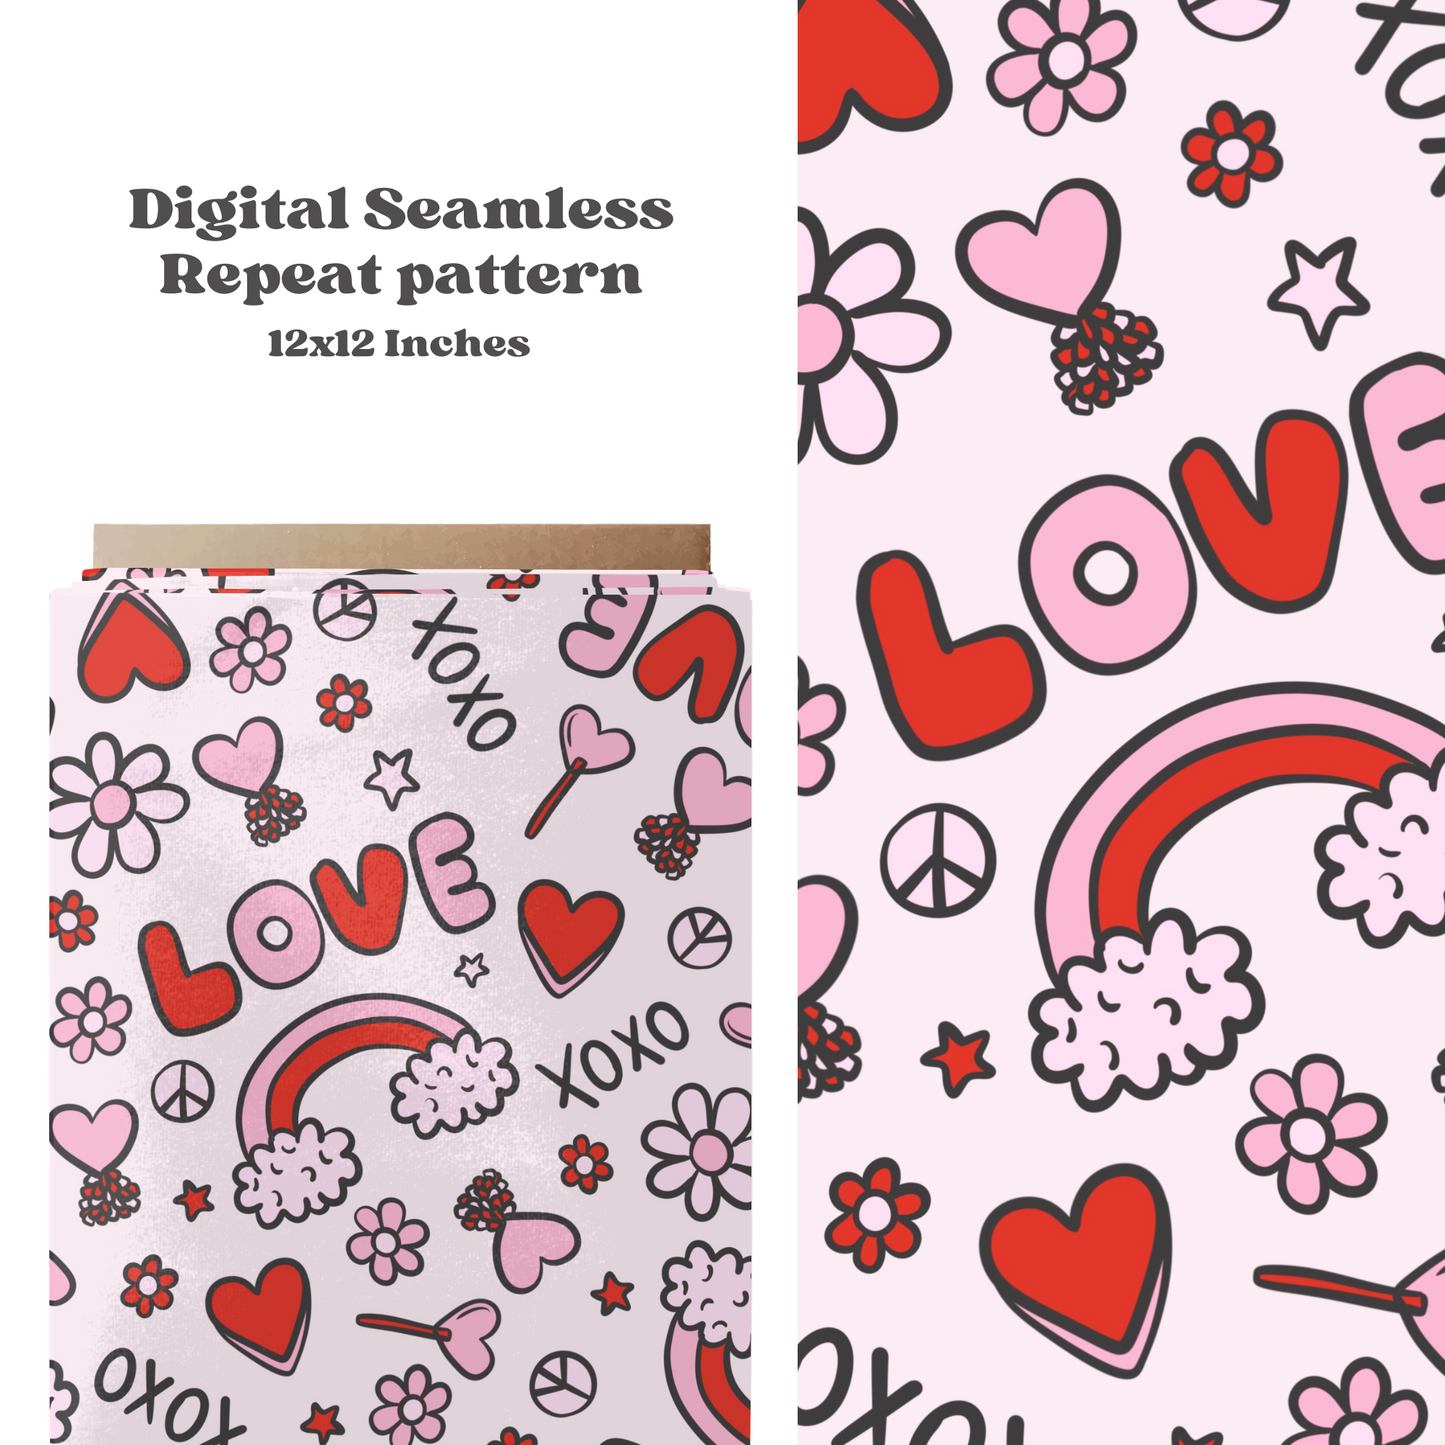 Trendy Valentine’s Day love pattern design